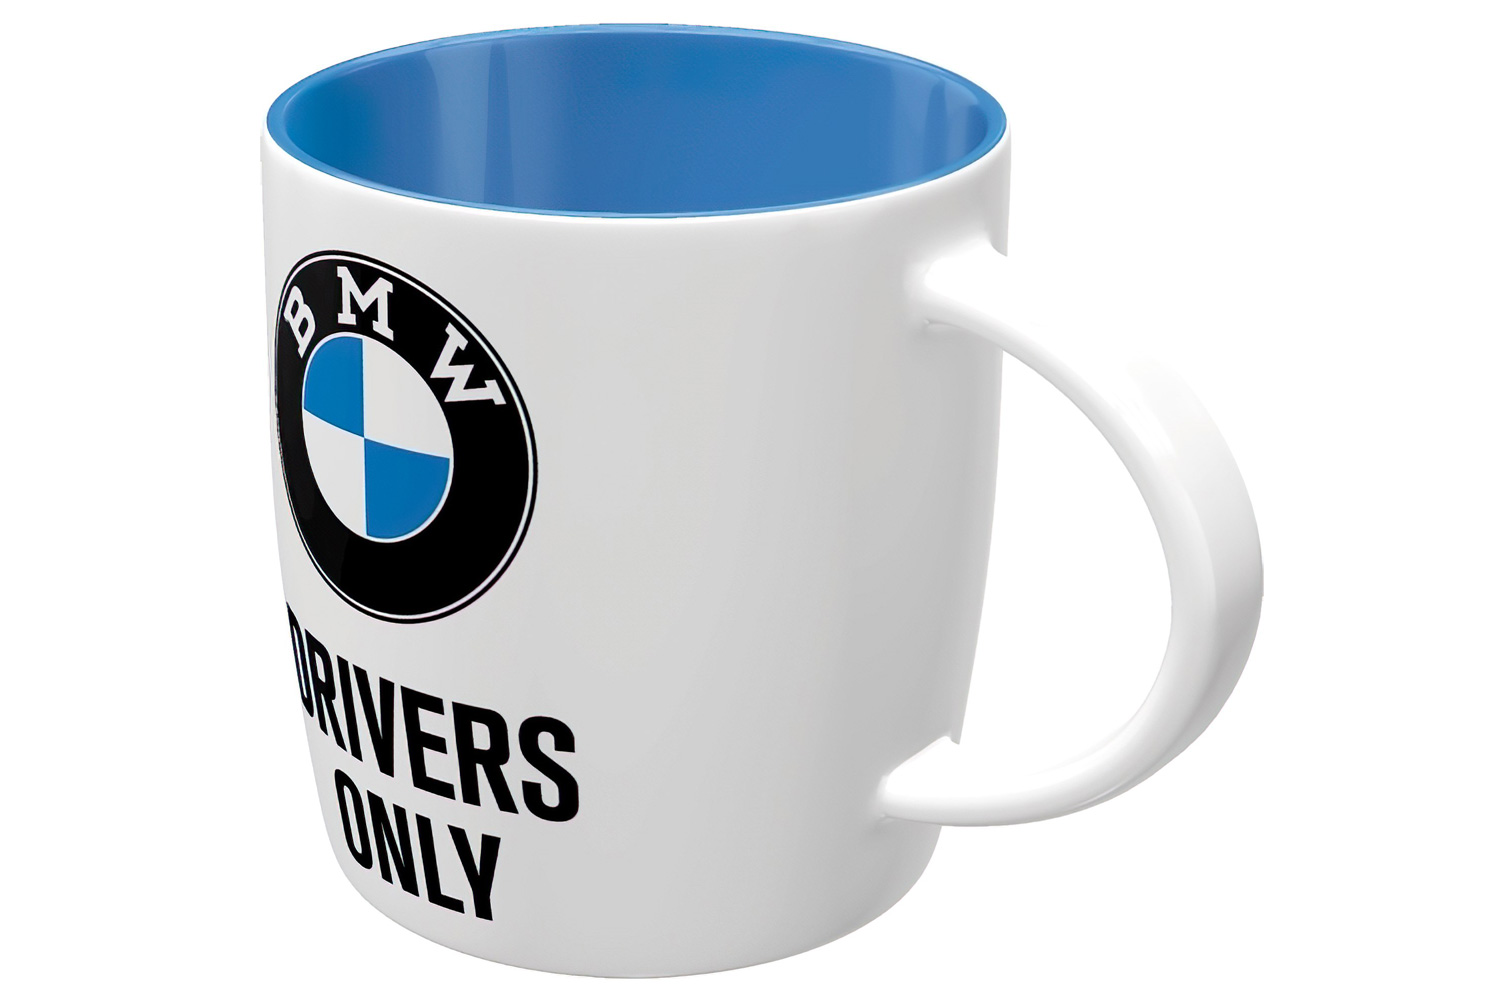 BMW Coffee Mug 15oz by Reefmonkey I'd Rather Be Driving My BMW